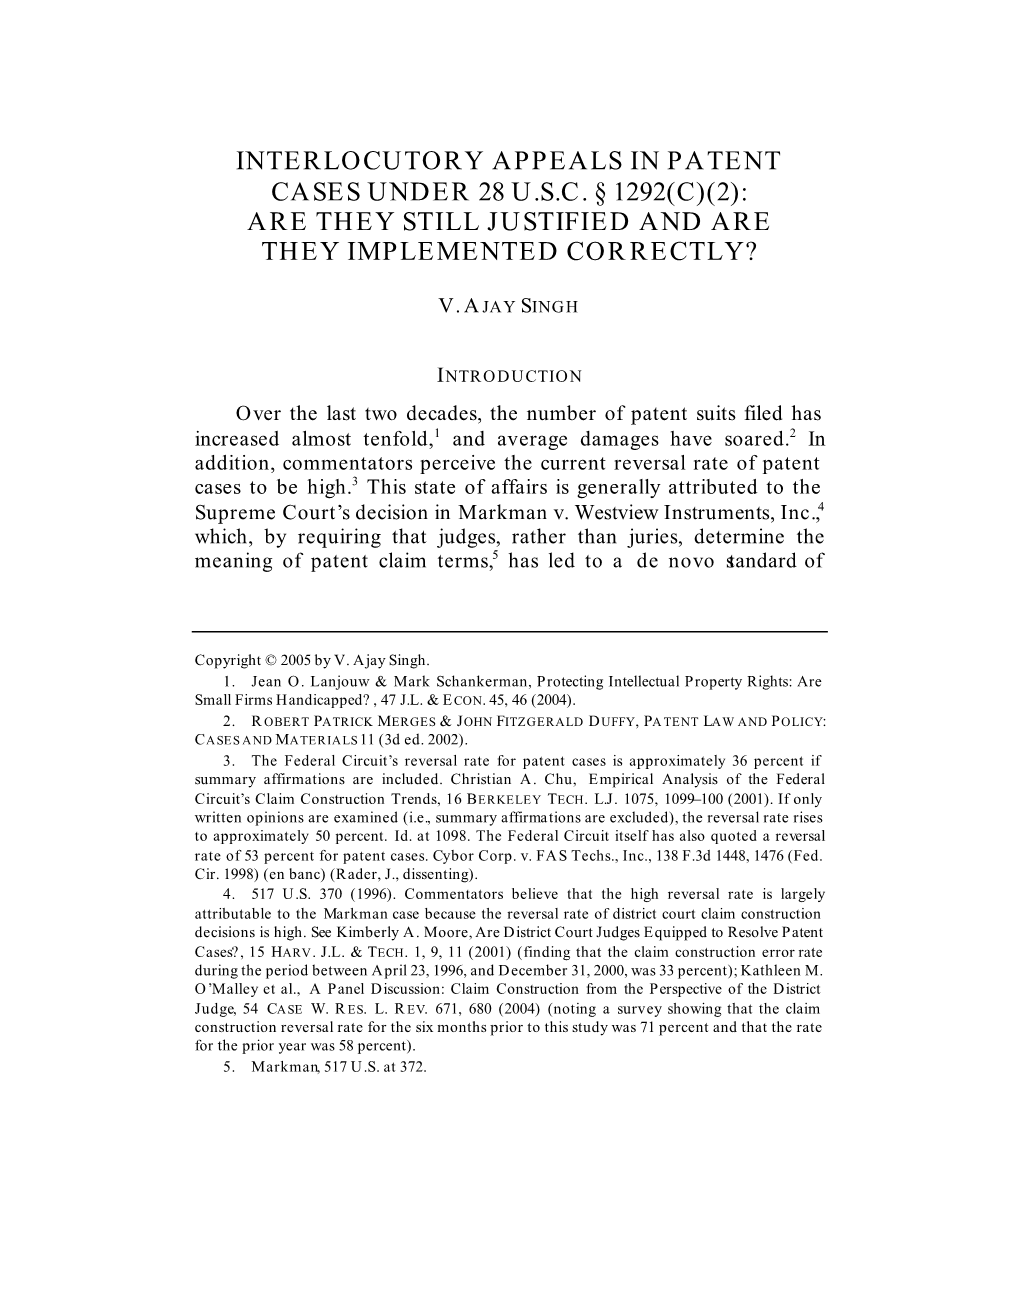 Interlocutory Appeals in Patent Cases Under 28 U.S.C